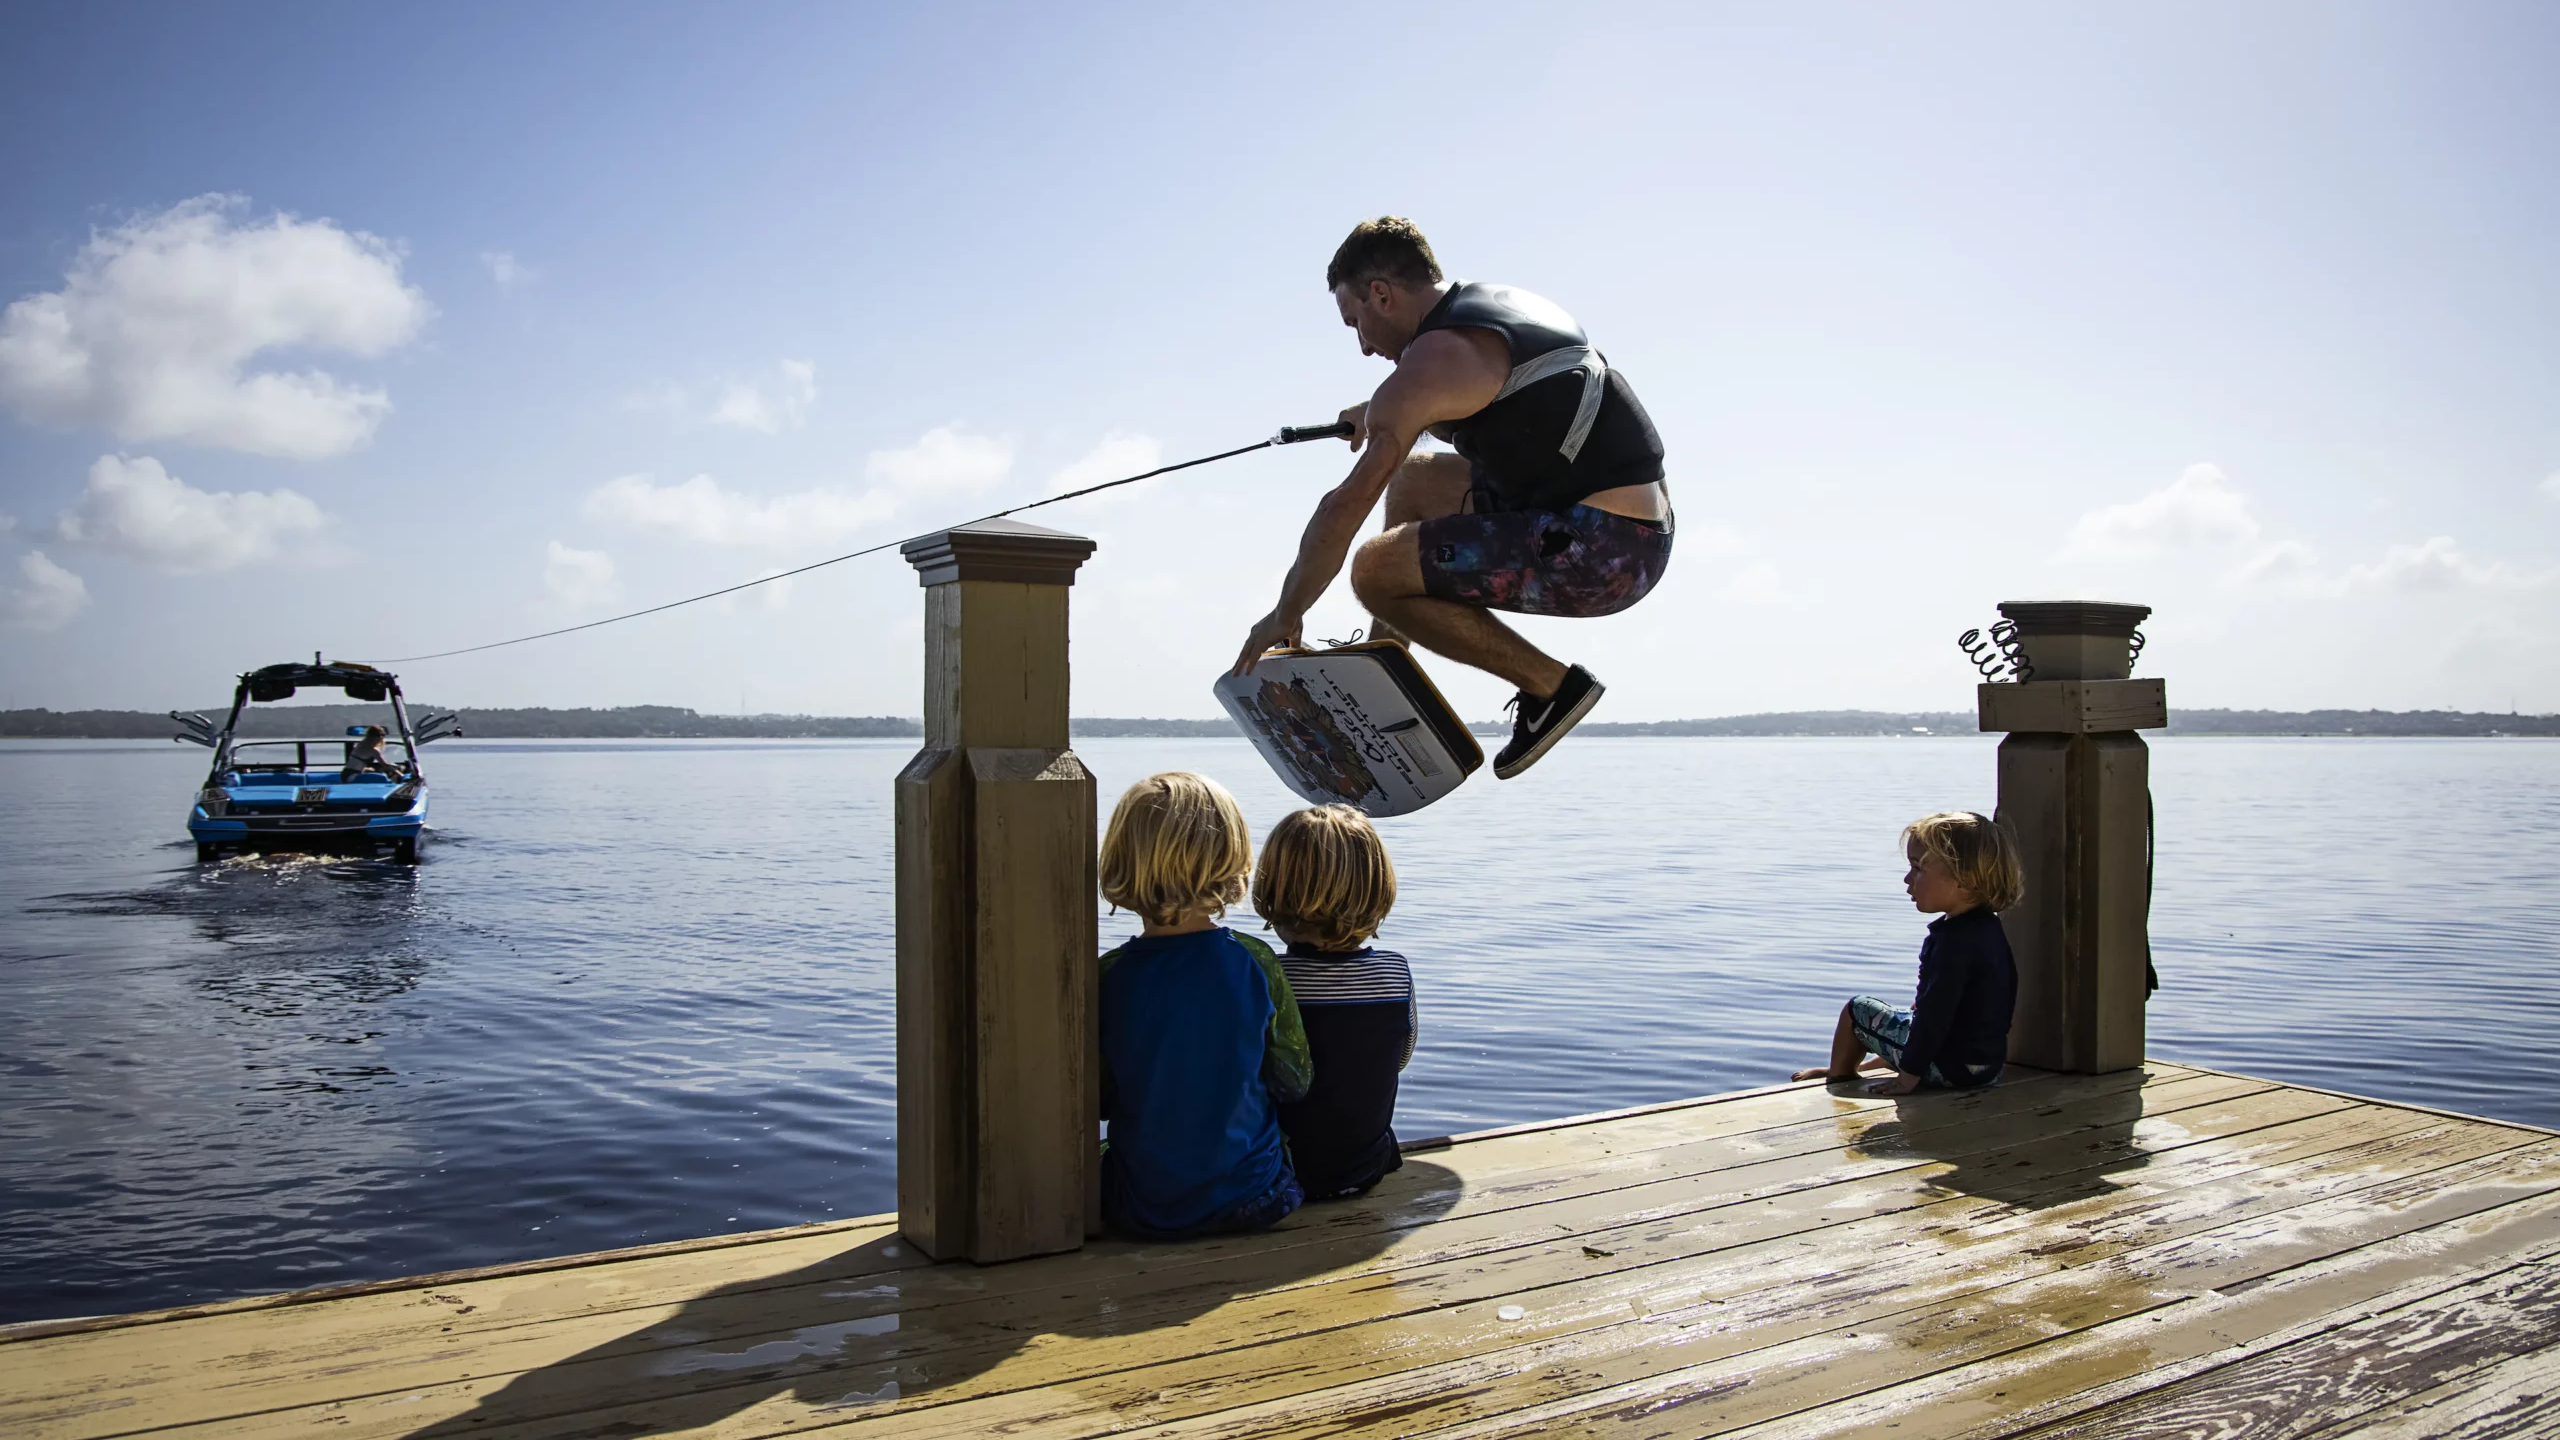 Matt Manzari jumping over children